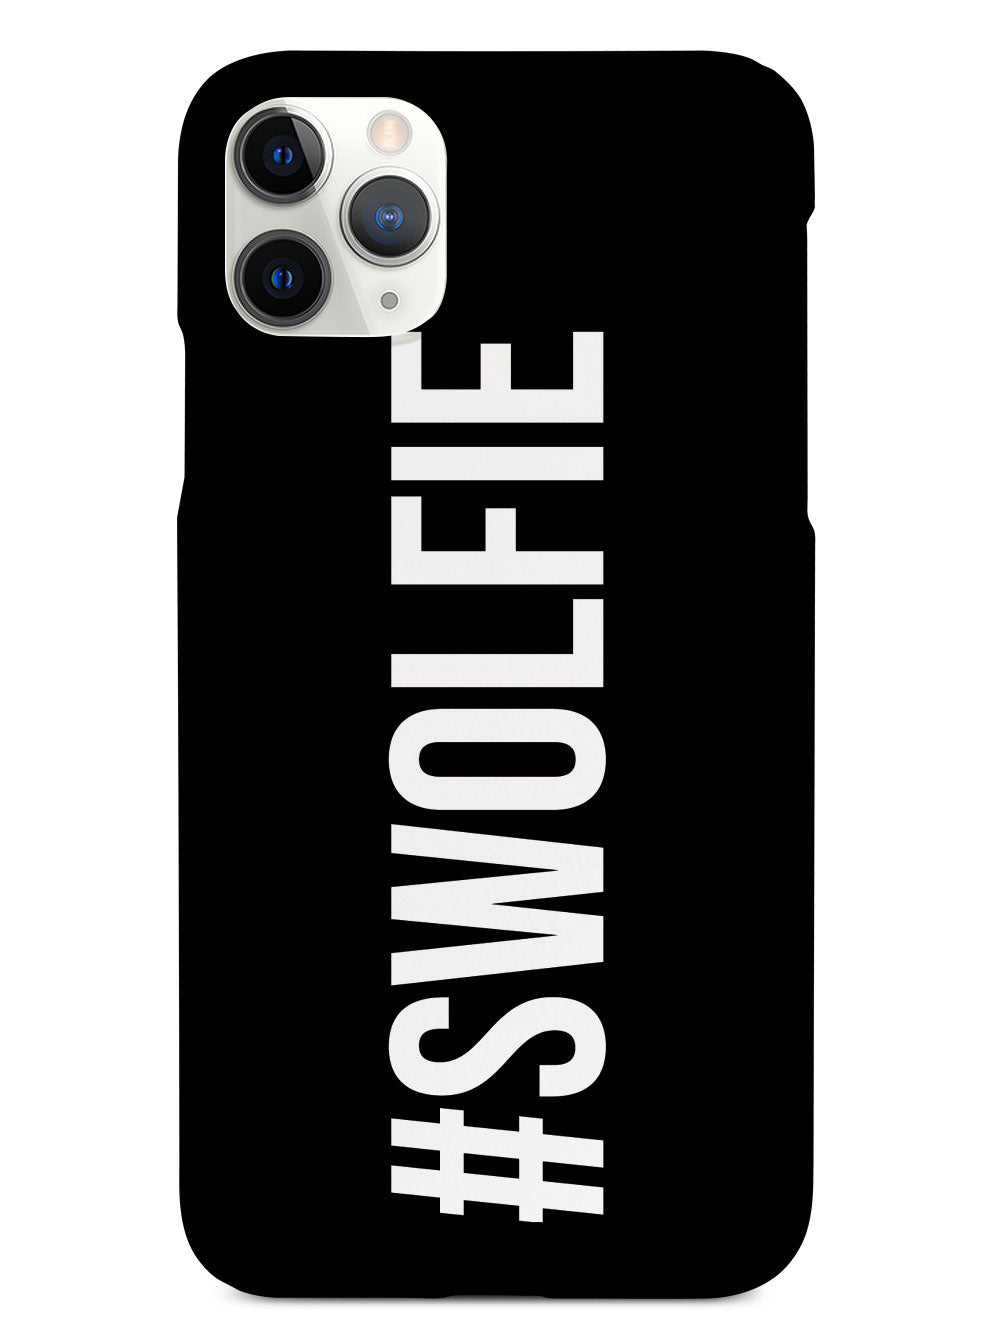 Hashtag #Swolfie Workout Selfie Case